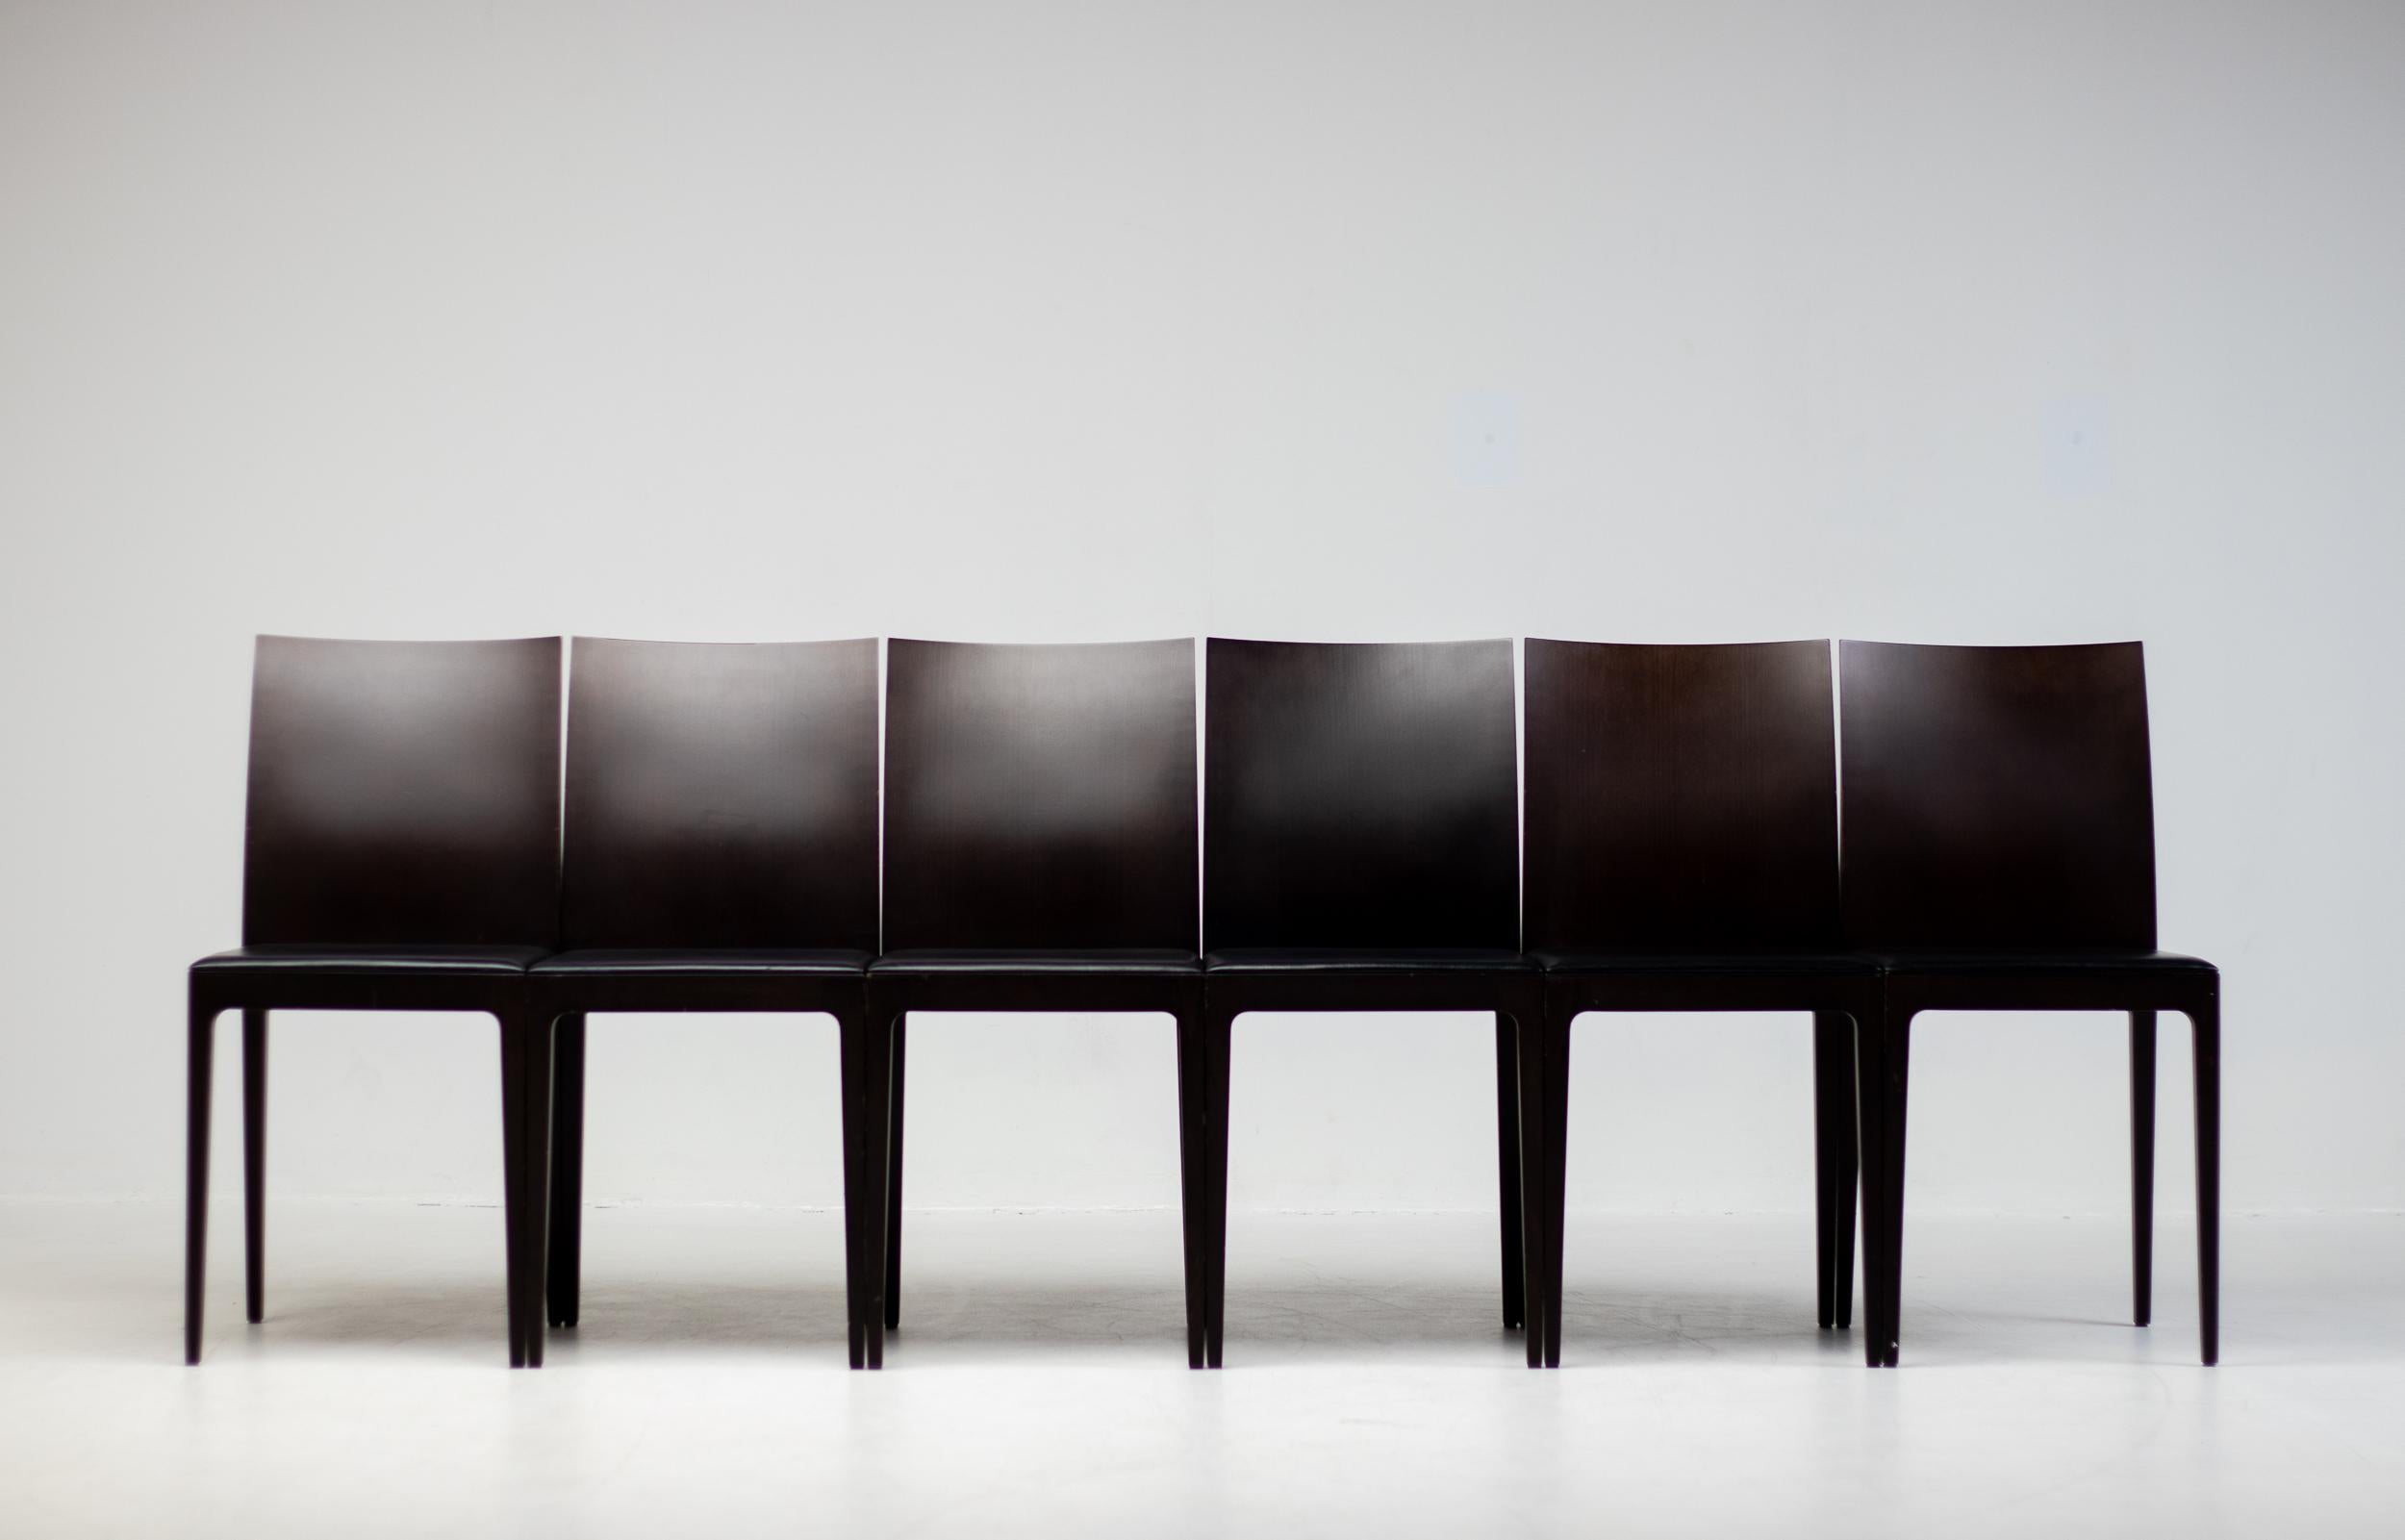 Ein Satz von sechs Anna R Esszimmerstühlen, entworfen von Ludovica und Roberto Palomba für Crassevig, Italien. 
Diese Stühle haben einen dunkelbraunen Massivholzrahmen mit doppelwandiger Rückenlehne und einer mit schwarzem Leder bezogenen